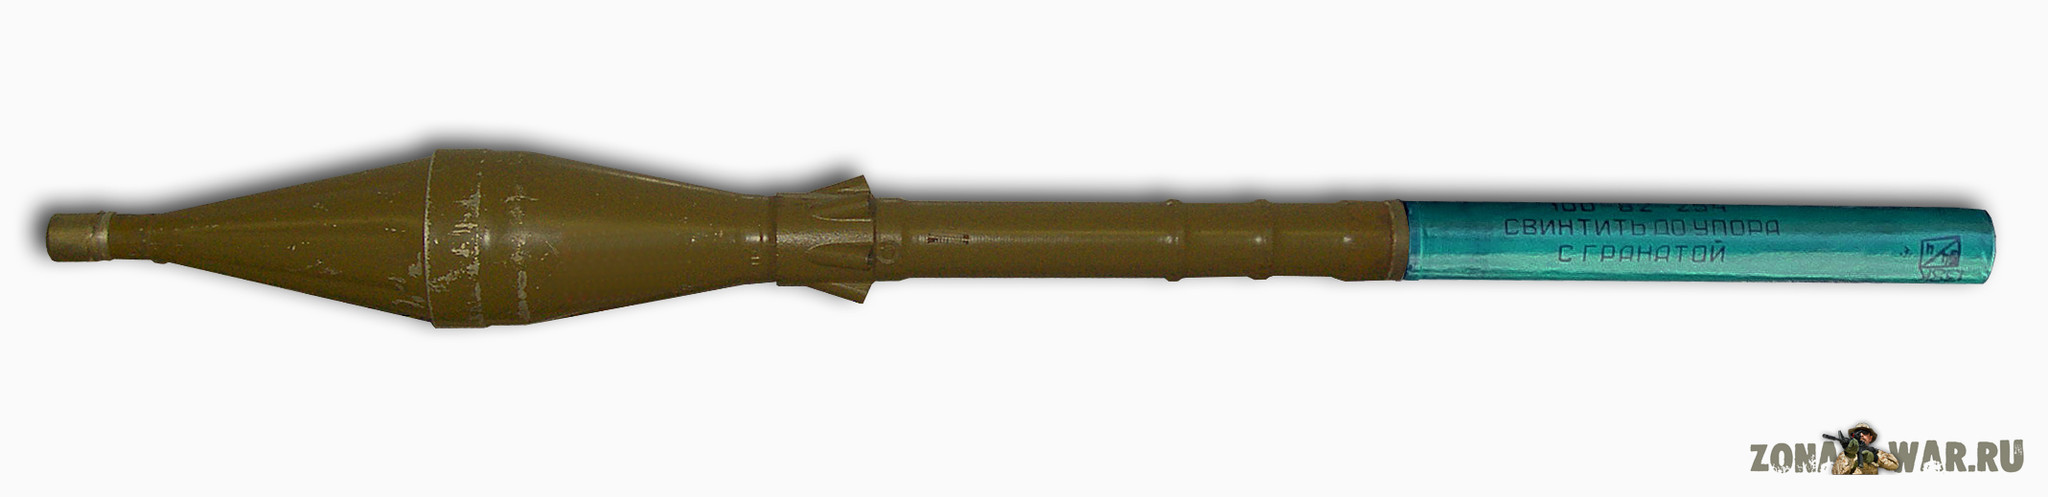 Выстрел ПГ-7ВМ